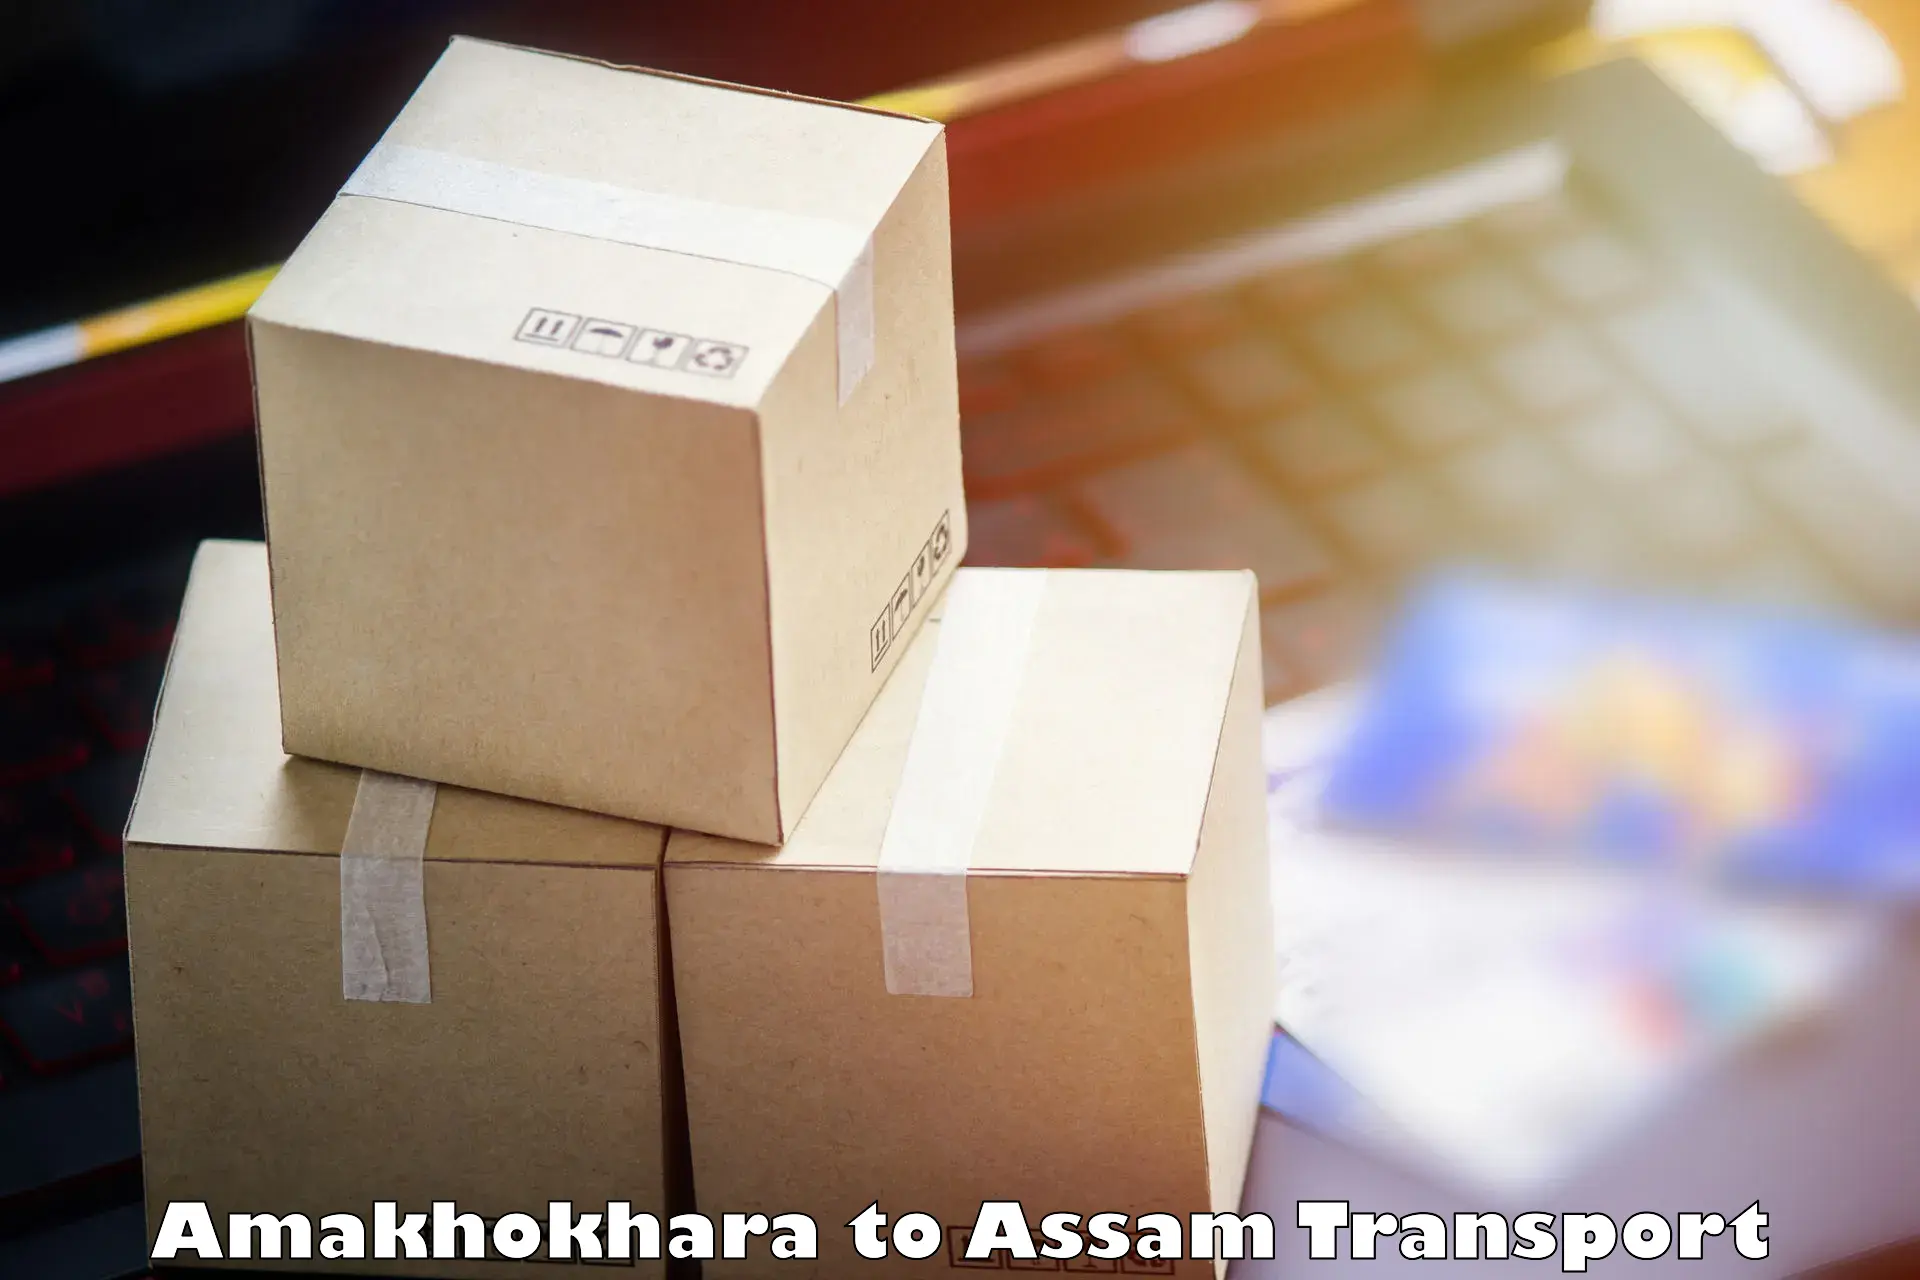 Transport services Amakhokhara to Balapara